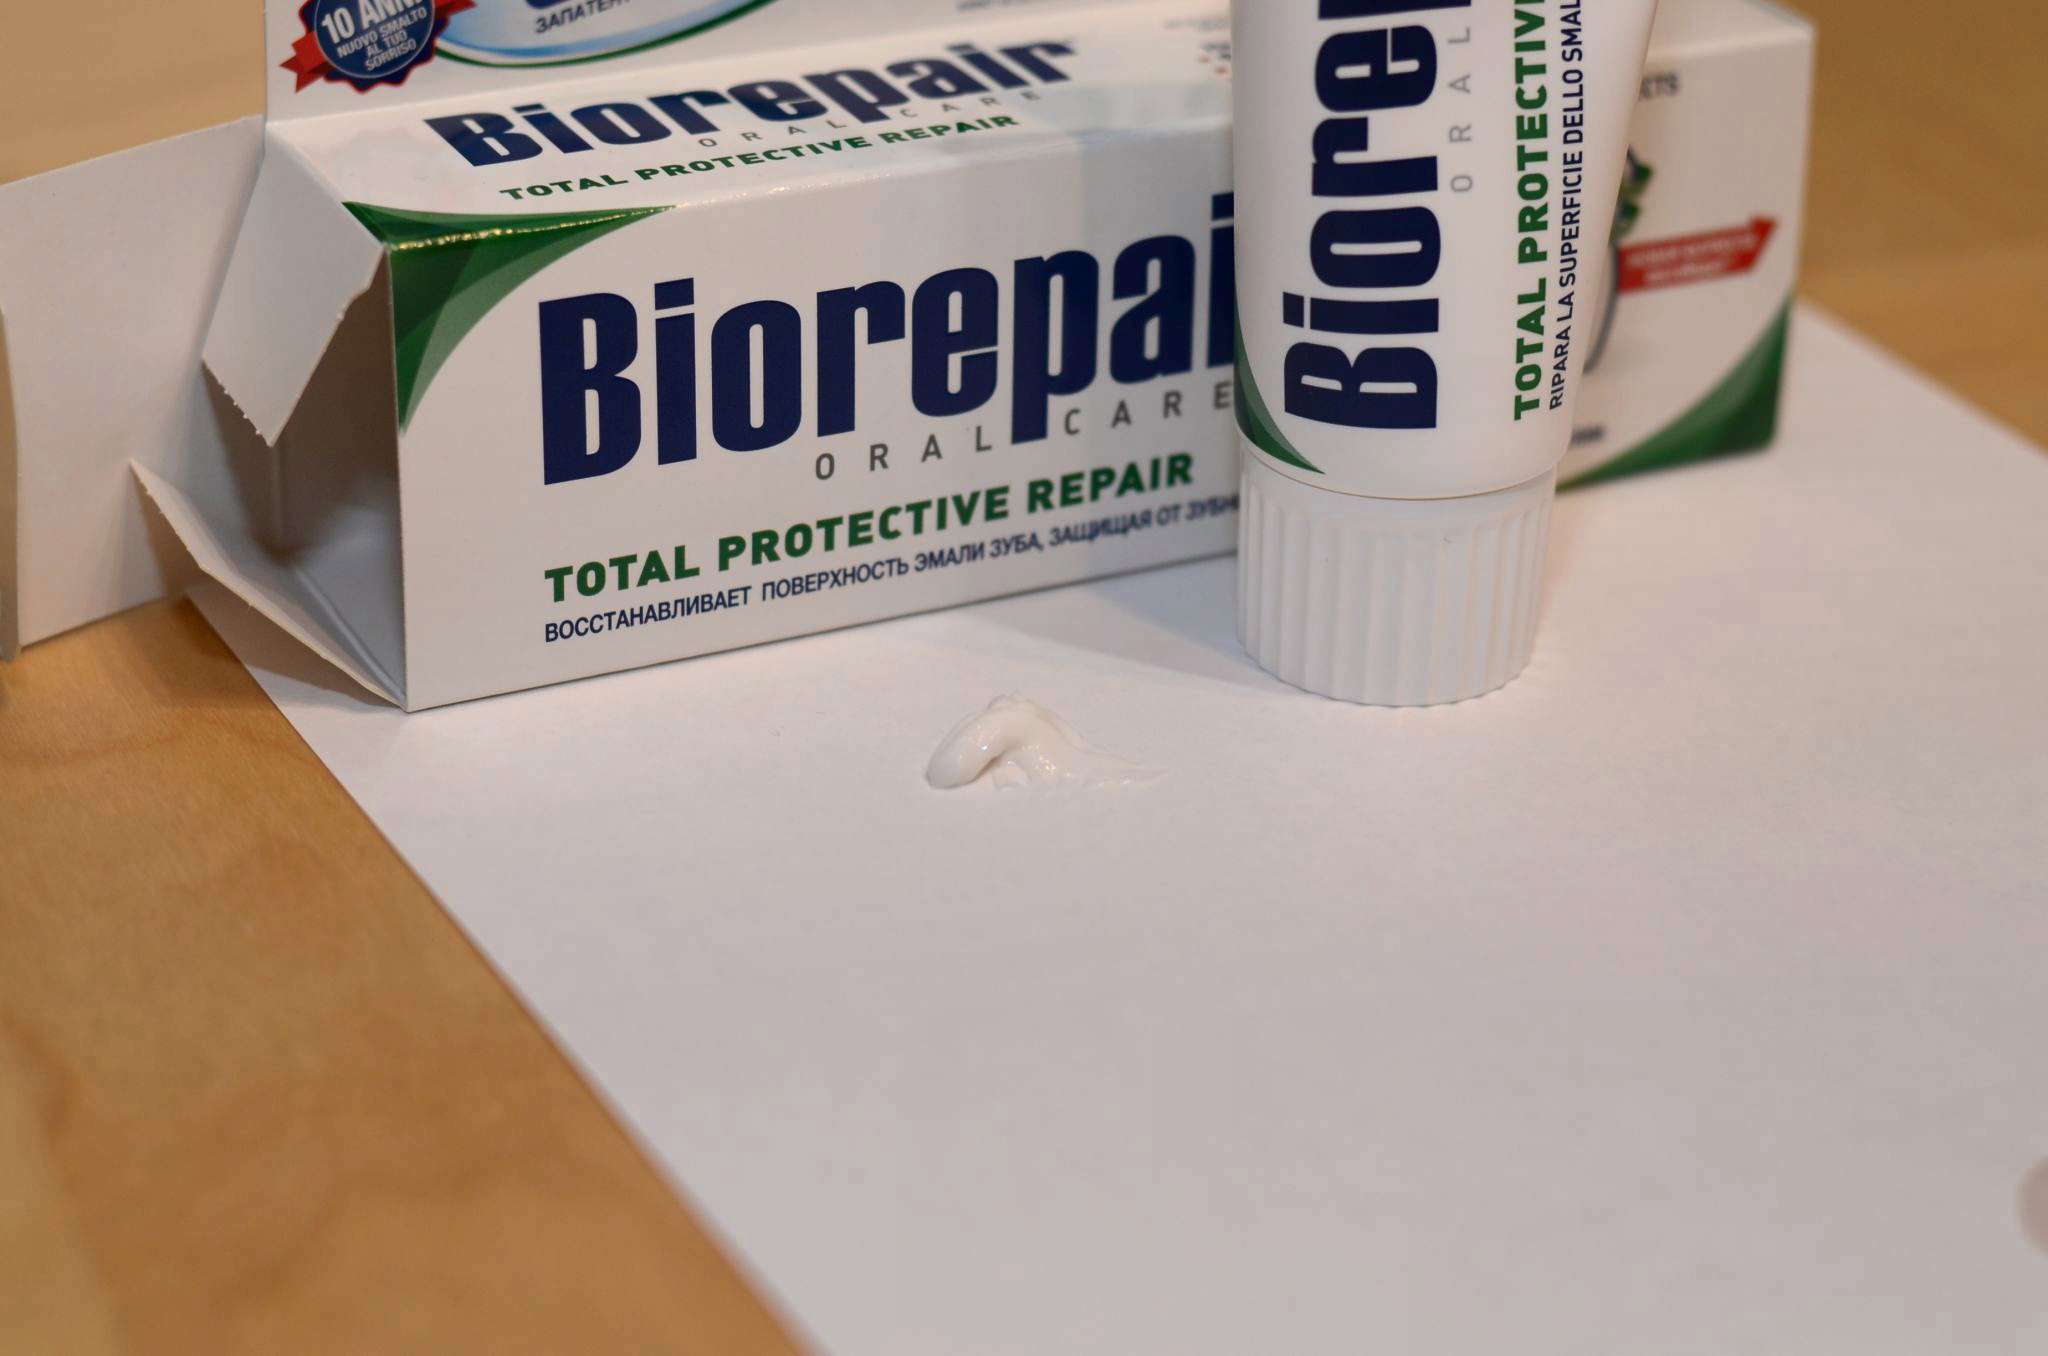 Biorepair зубная паста состав фото